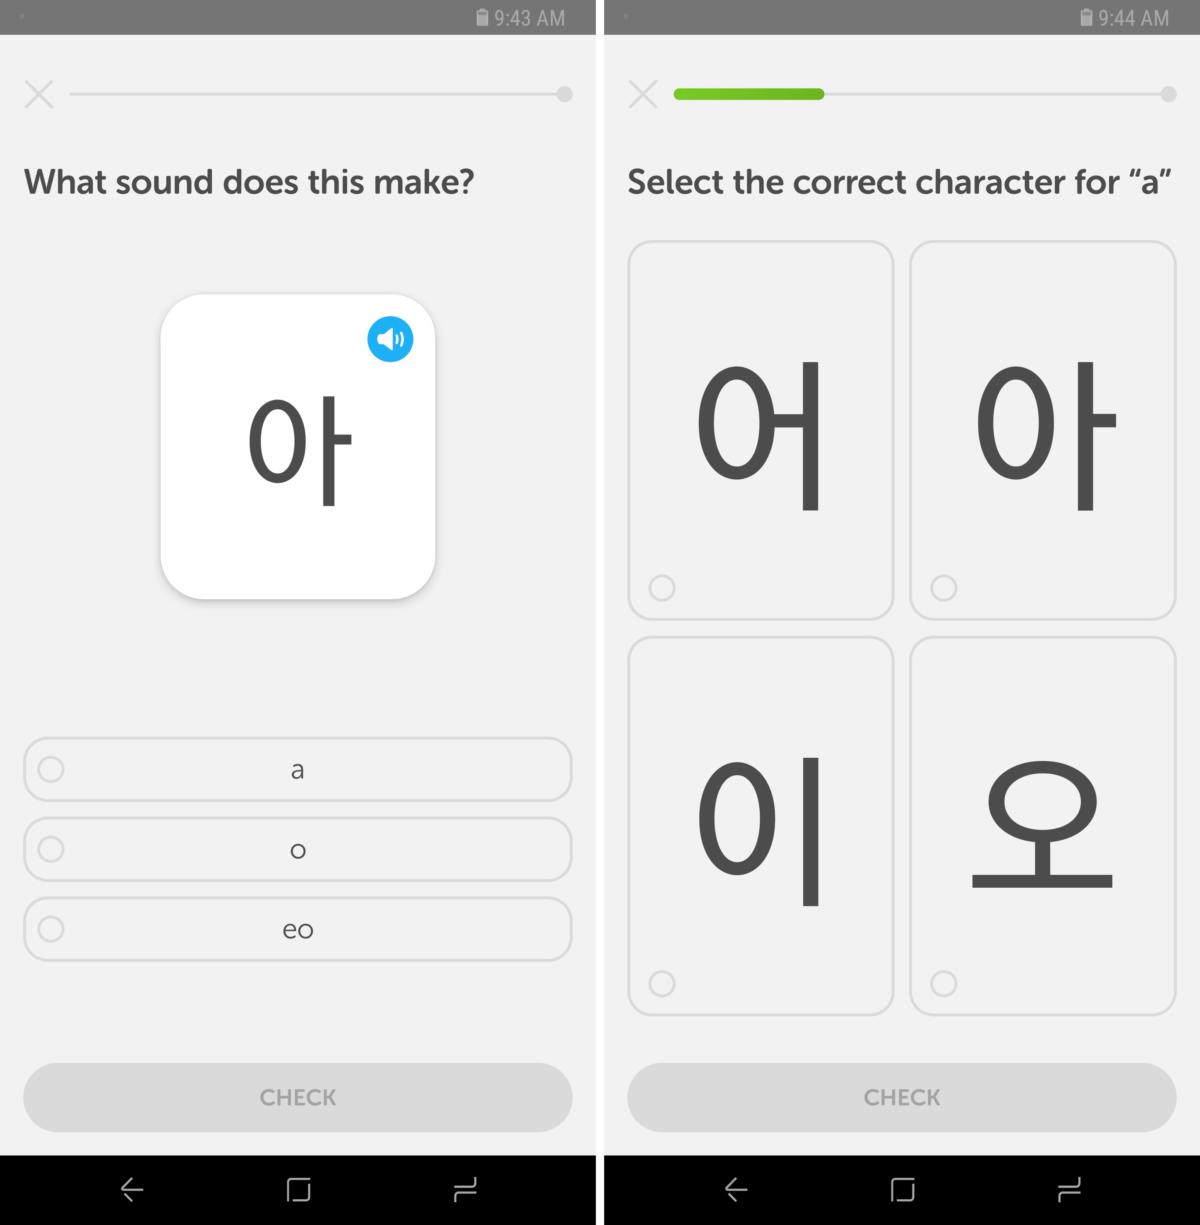 duolingo korean reddit